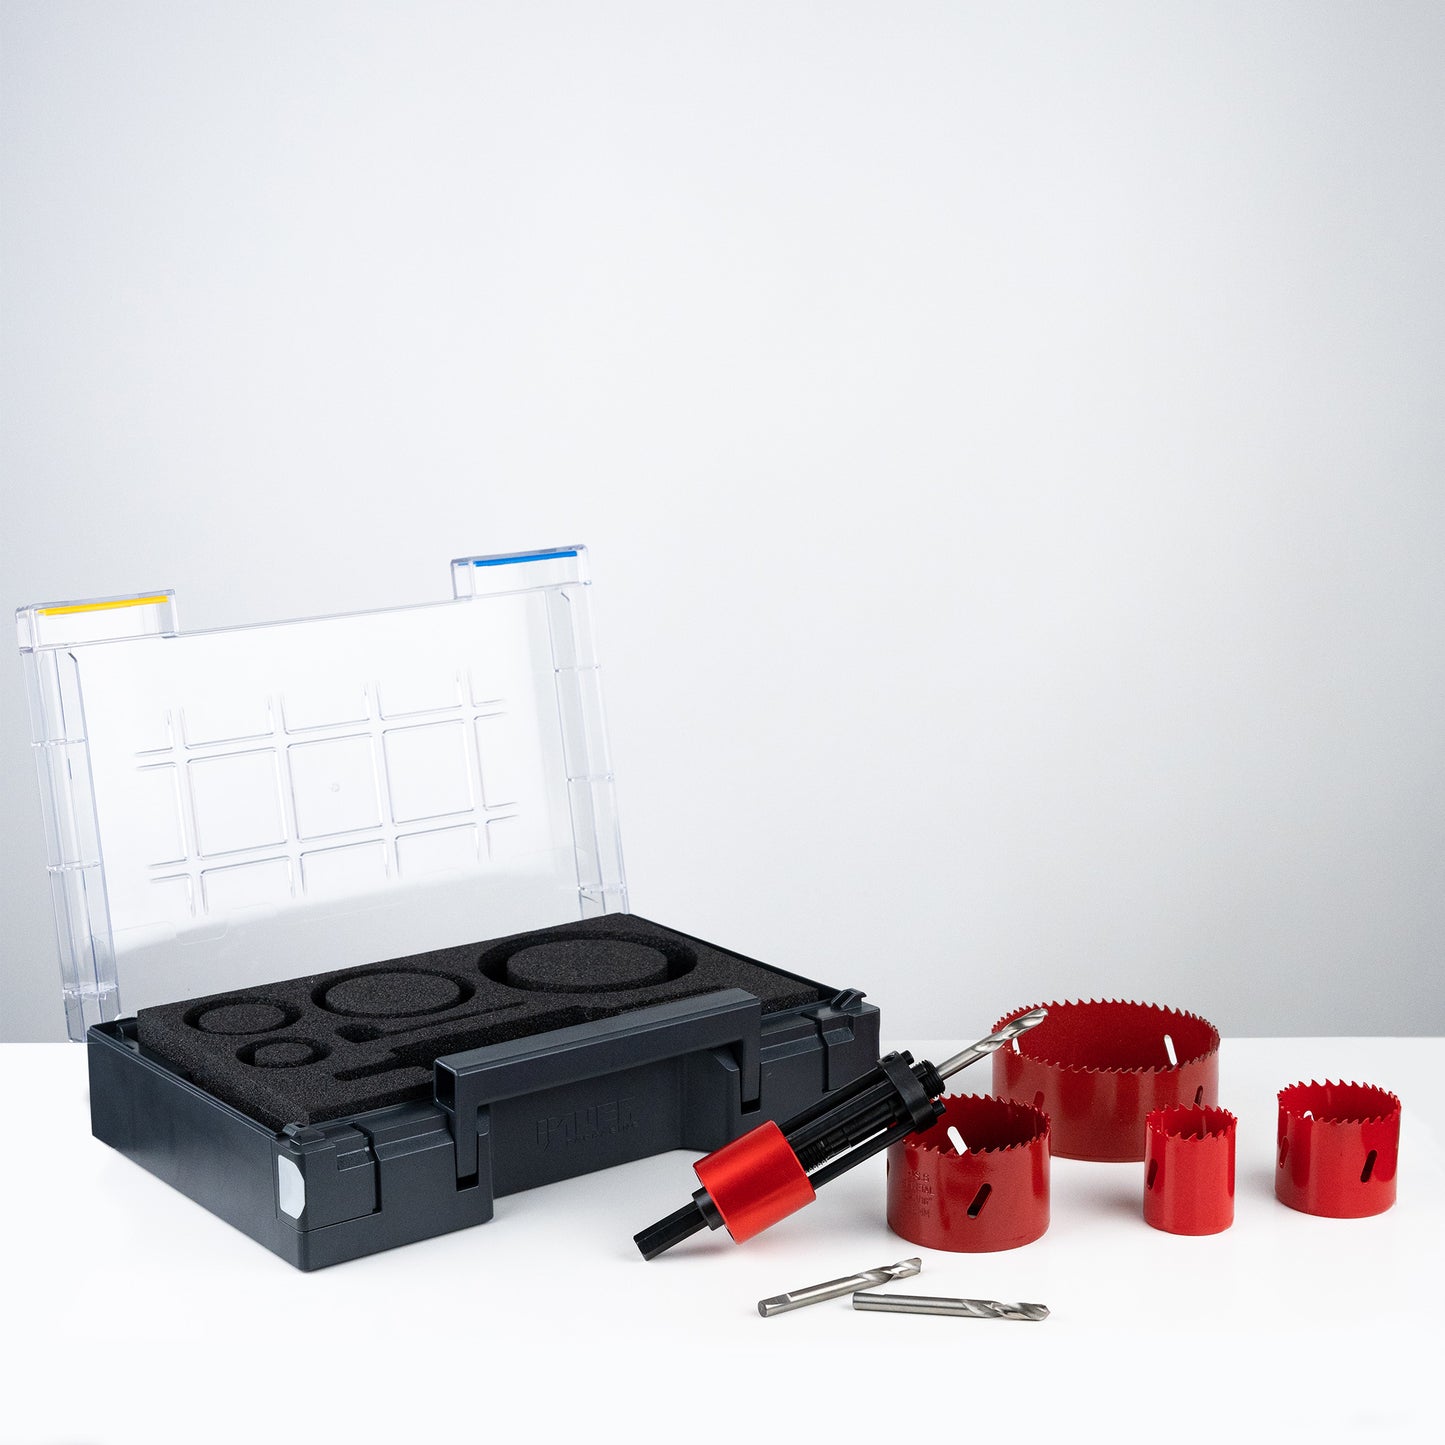 Lochmichel Koffer Set | Aufnahme für Lochsägen | Patentierte Auswurffunktion